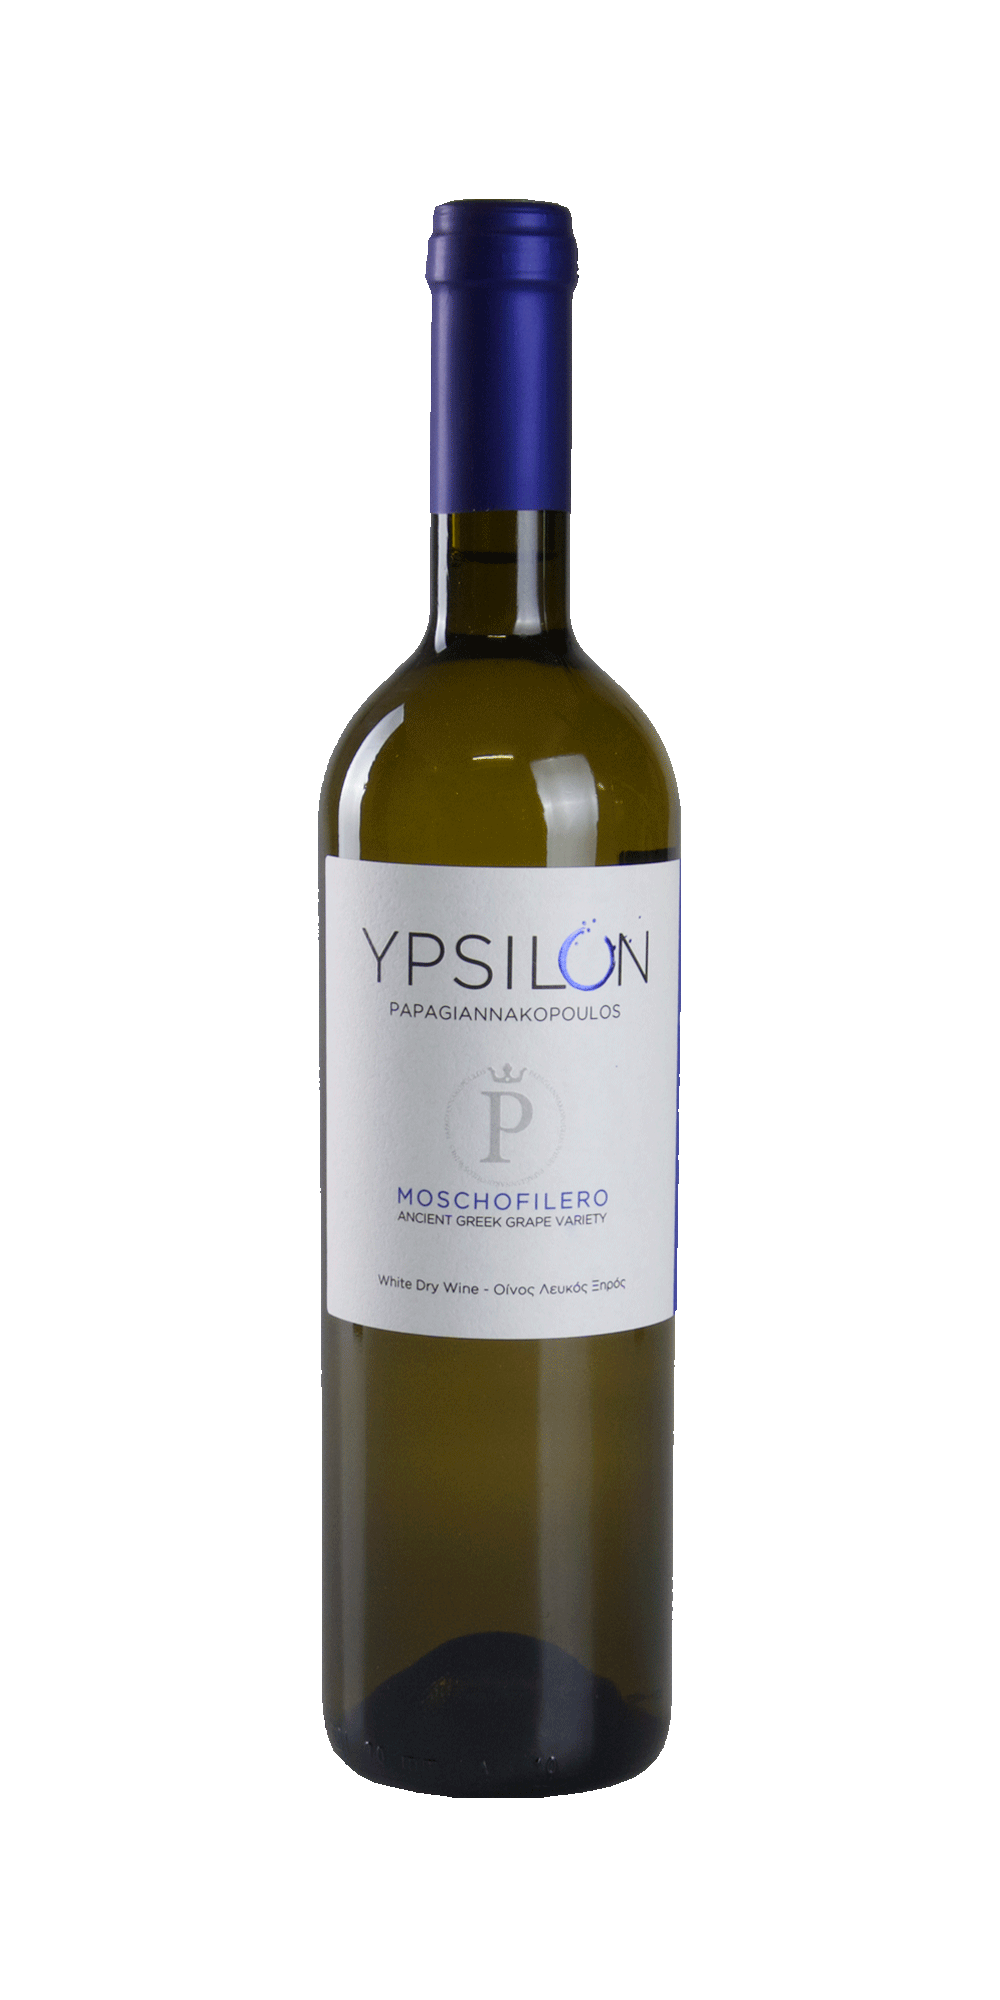 Ypsilon Moschofilero 2020 - Papagiannakopoulos Winery